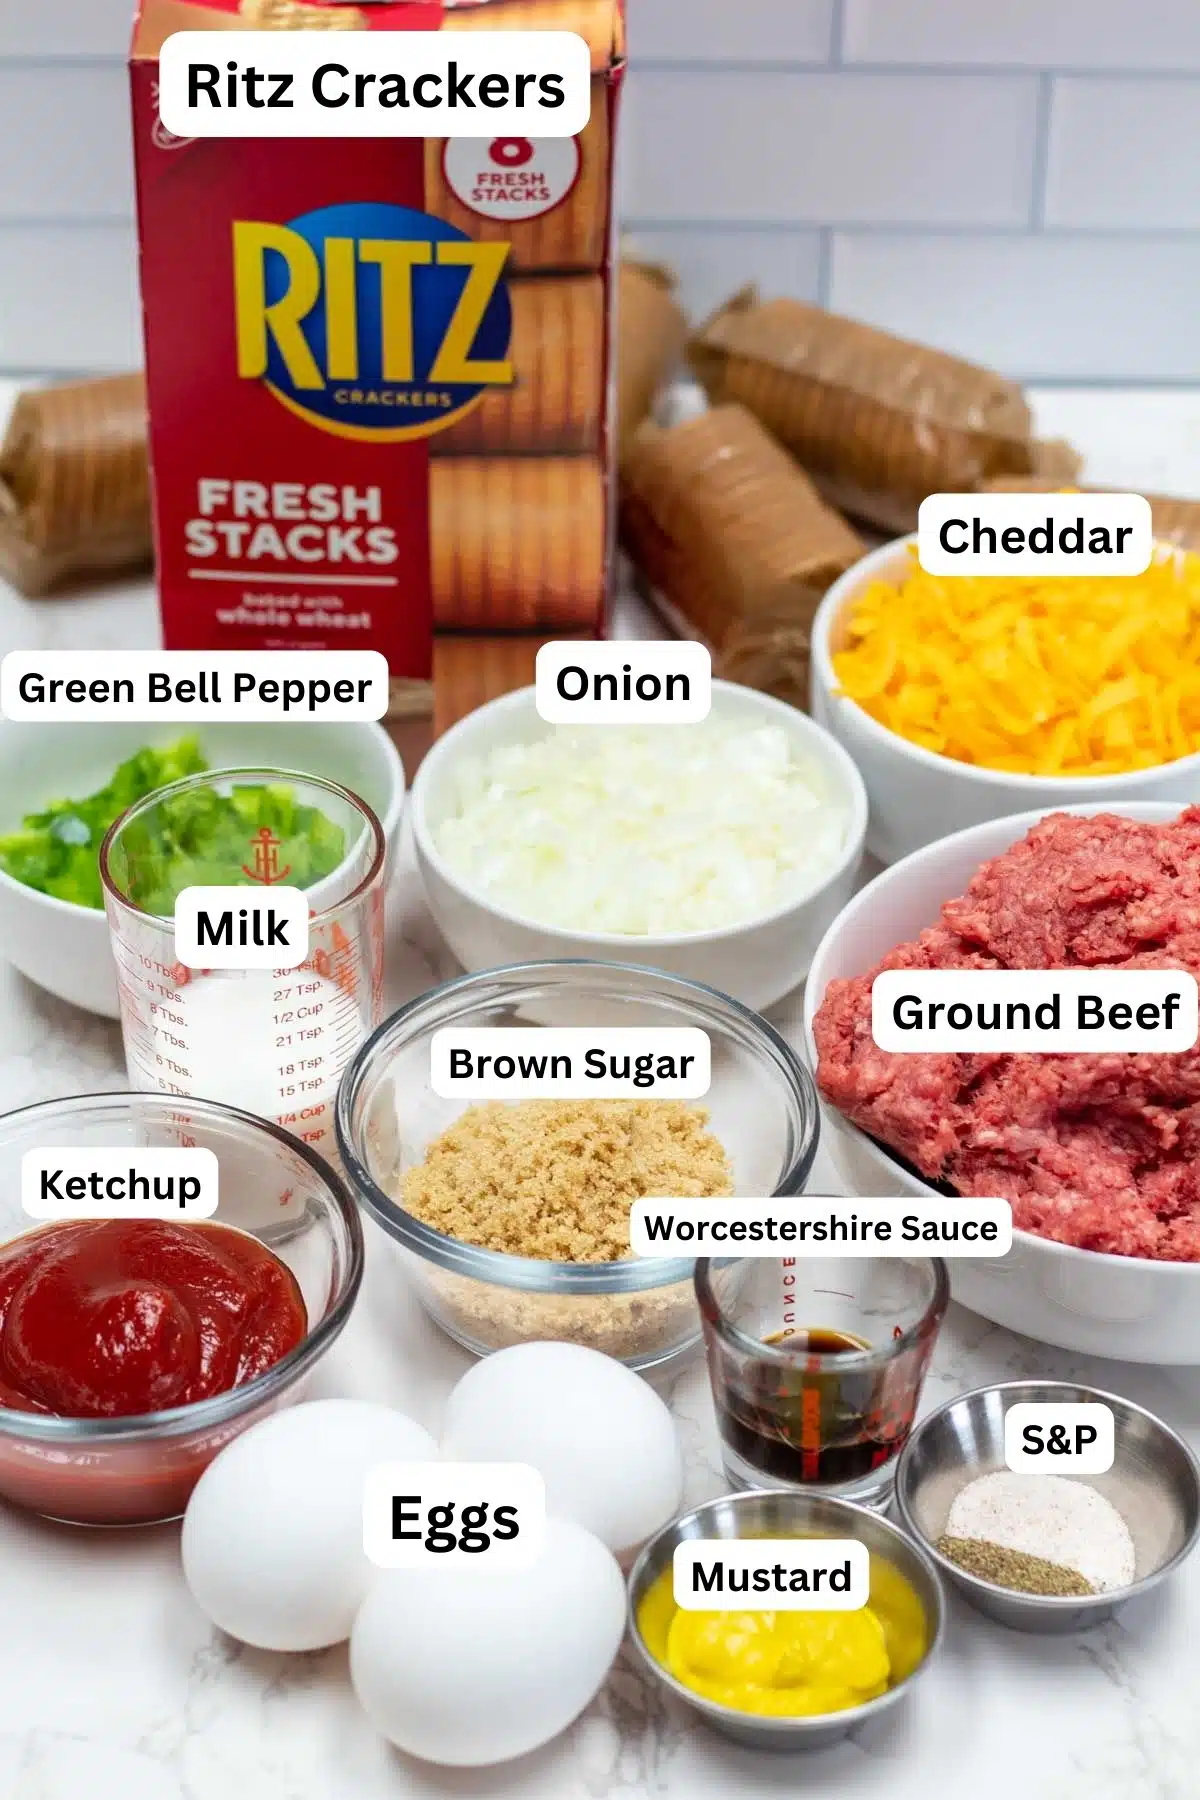 Cracker barrel meatloaf ingredients with labels.